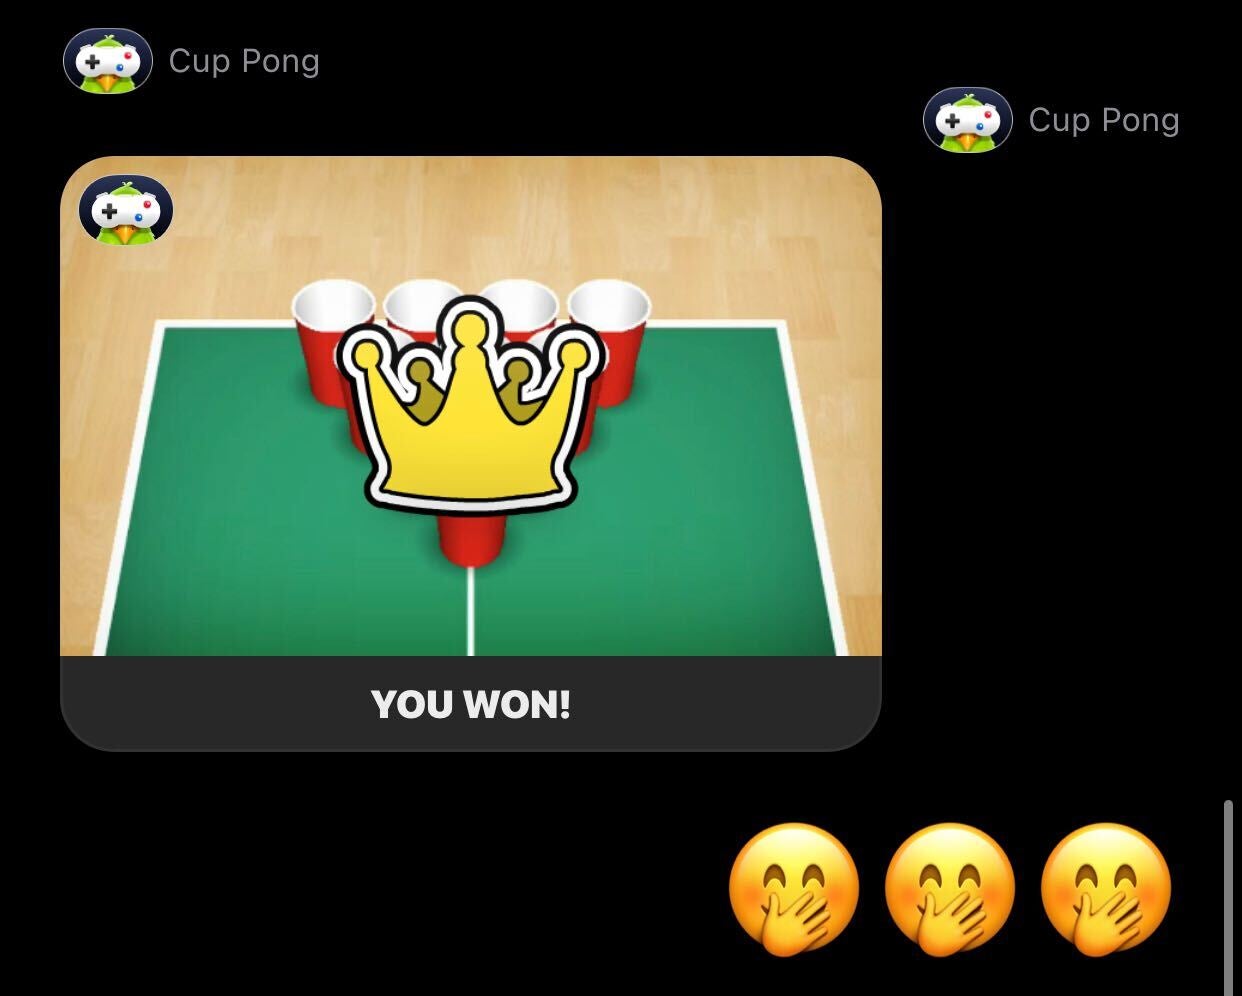 I won! (Screenshot: Kotaku)